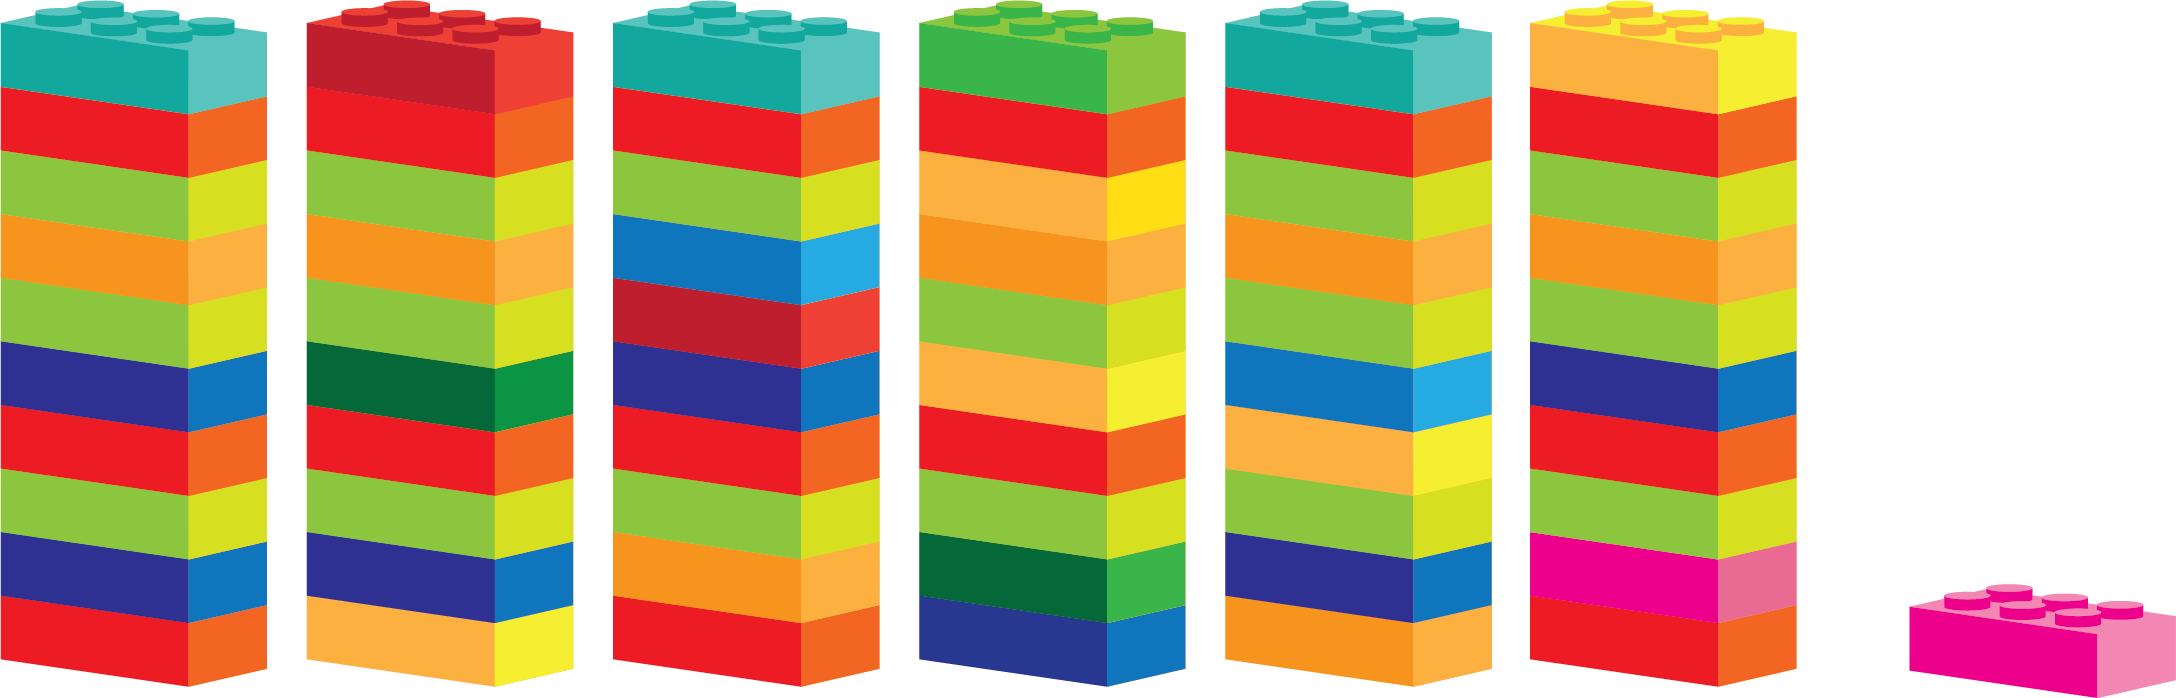 Шiсть веж по десять цеглинок Lego i окрема цеглинка поряд